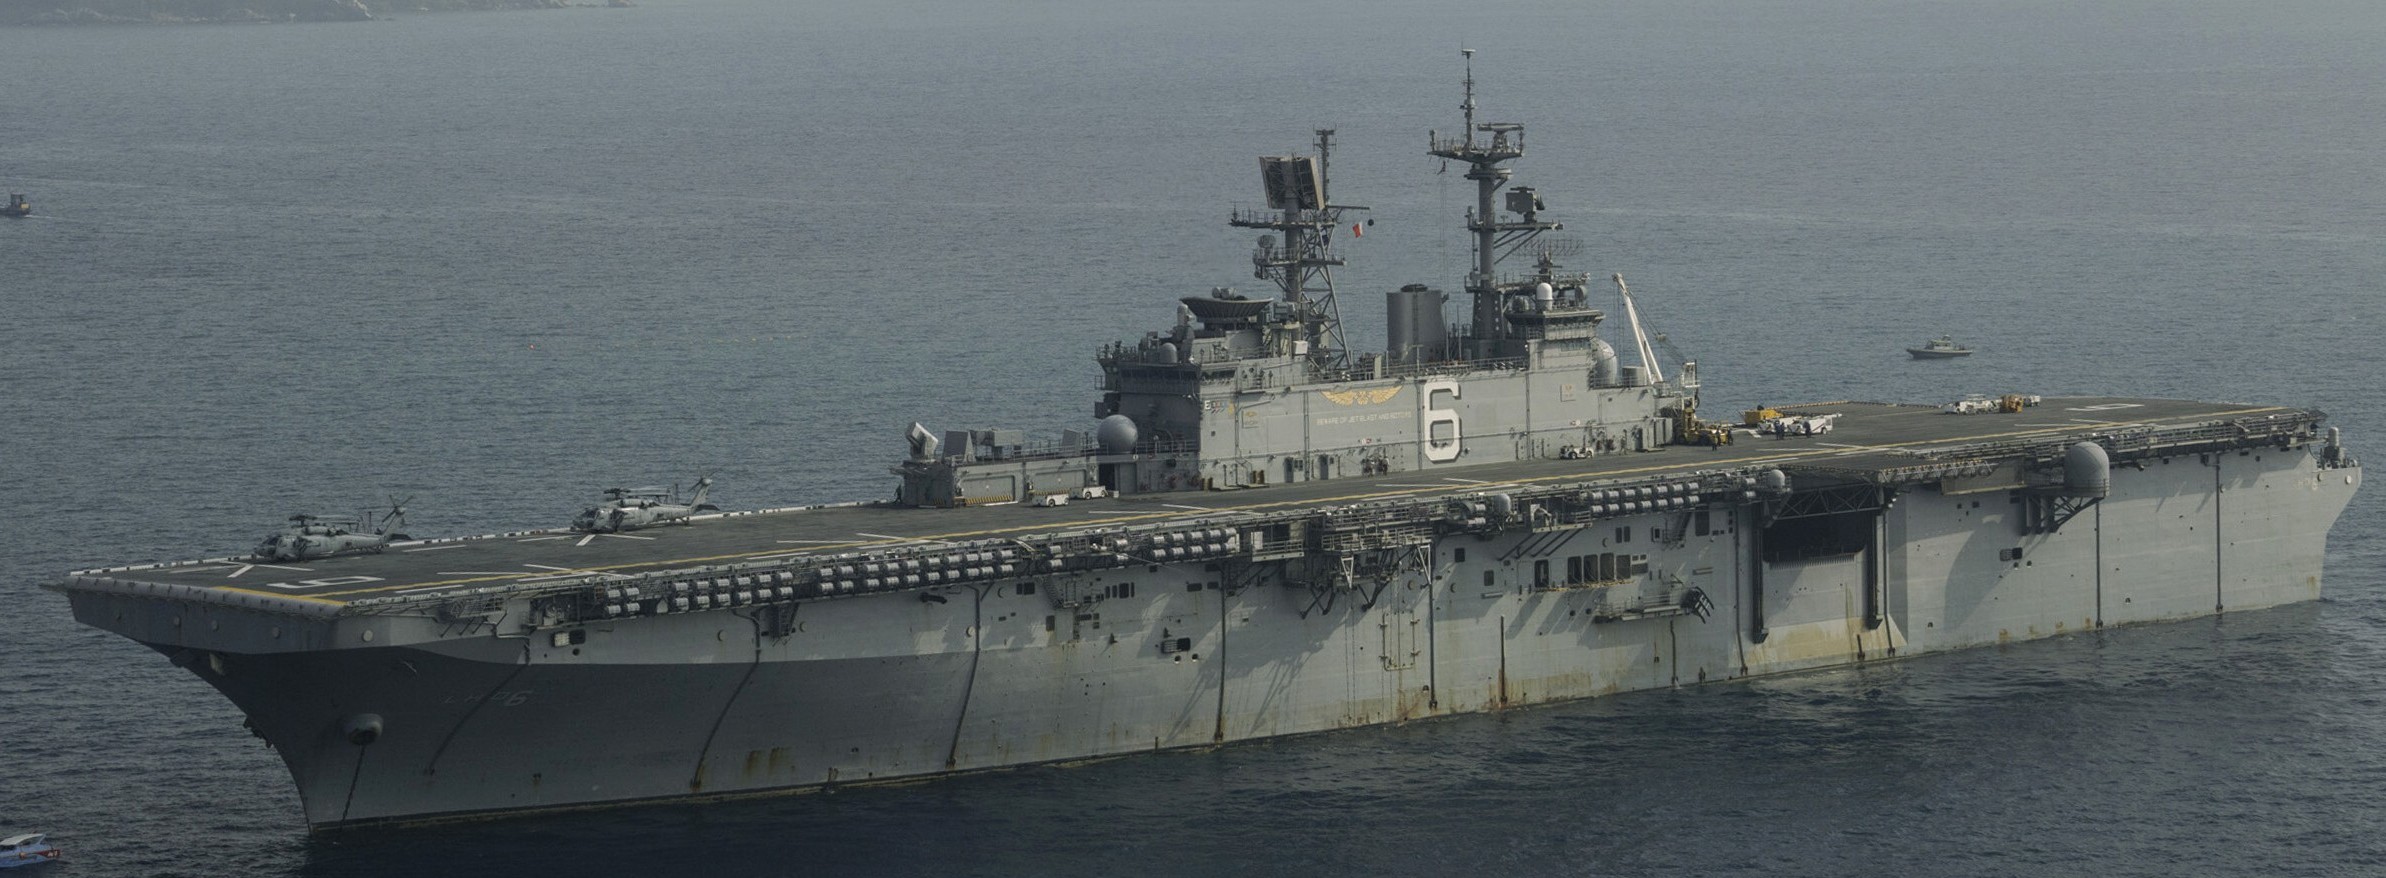 lhd-6 uss bonhomme richard amphibious assault ship landing helicopter dock wasp class us navy gulf thailand 36